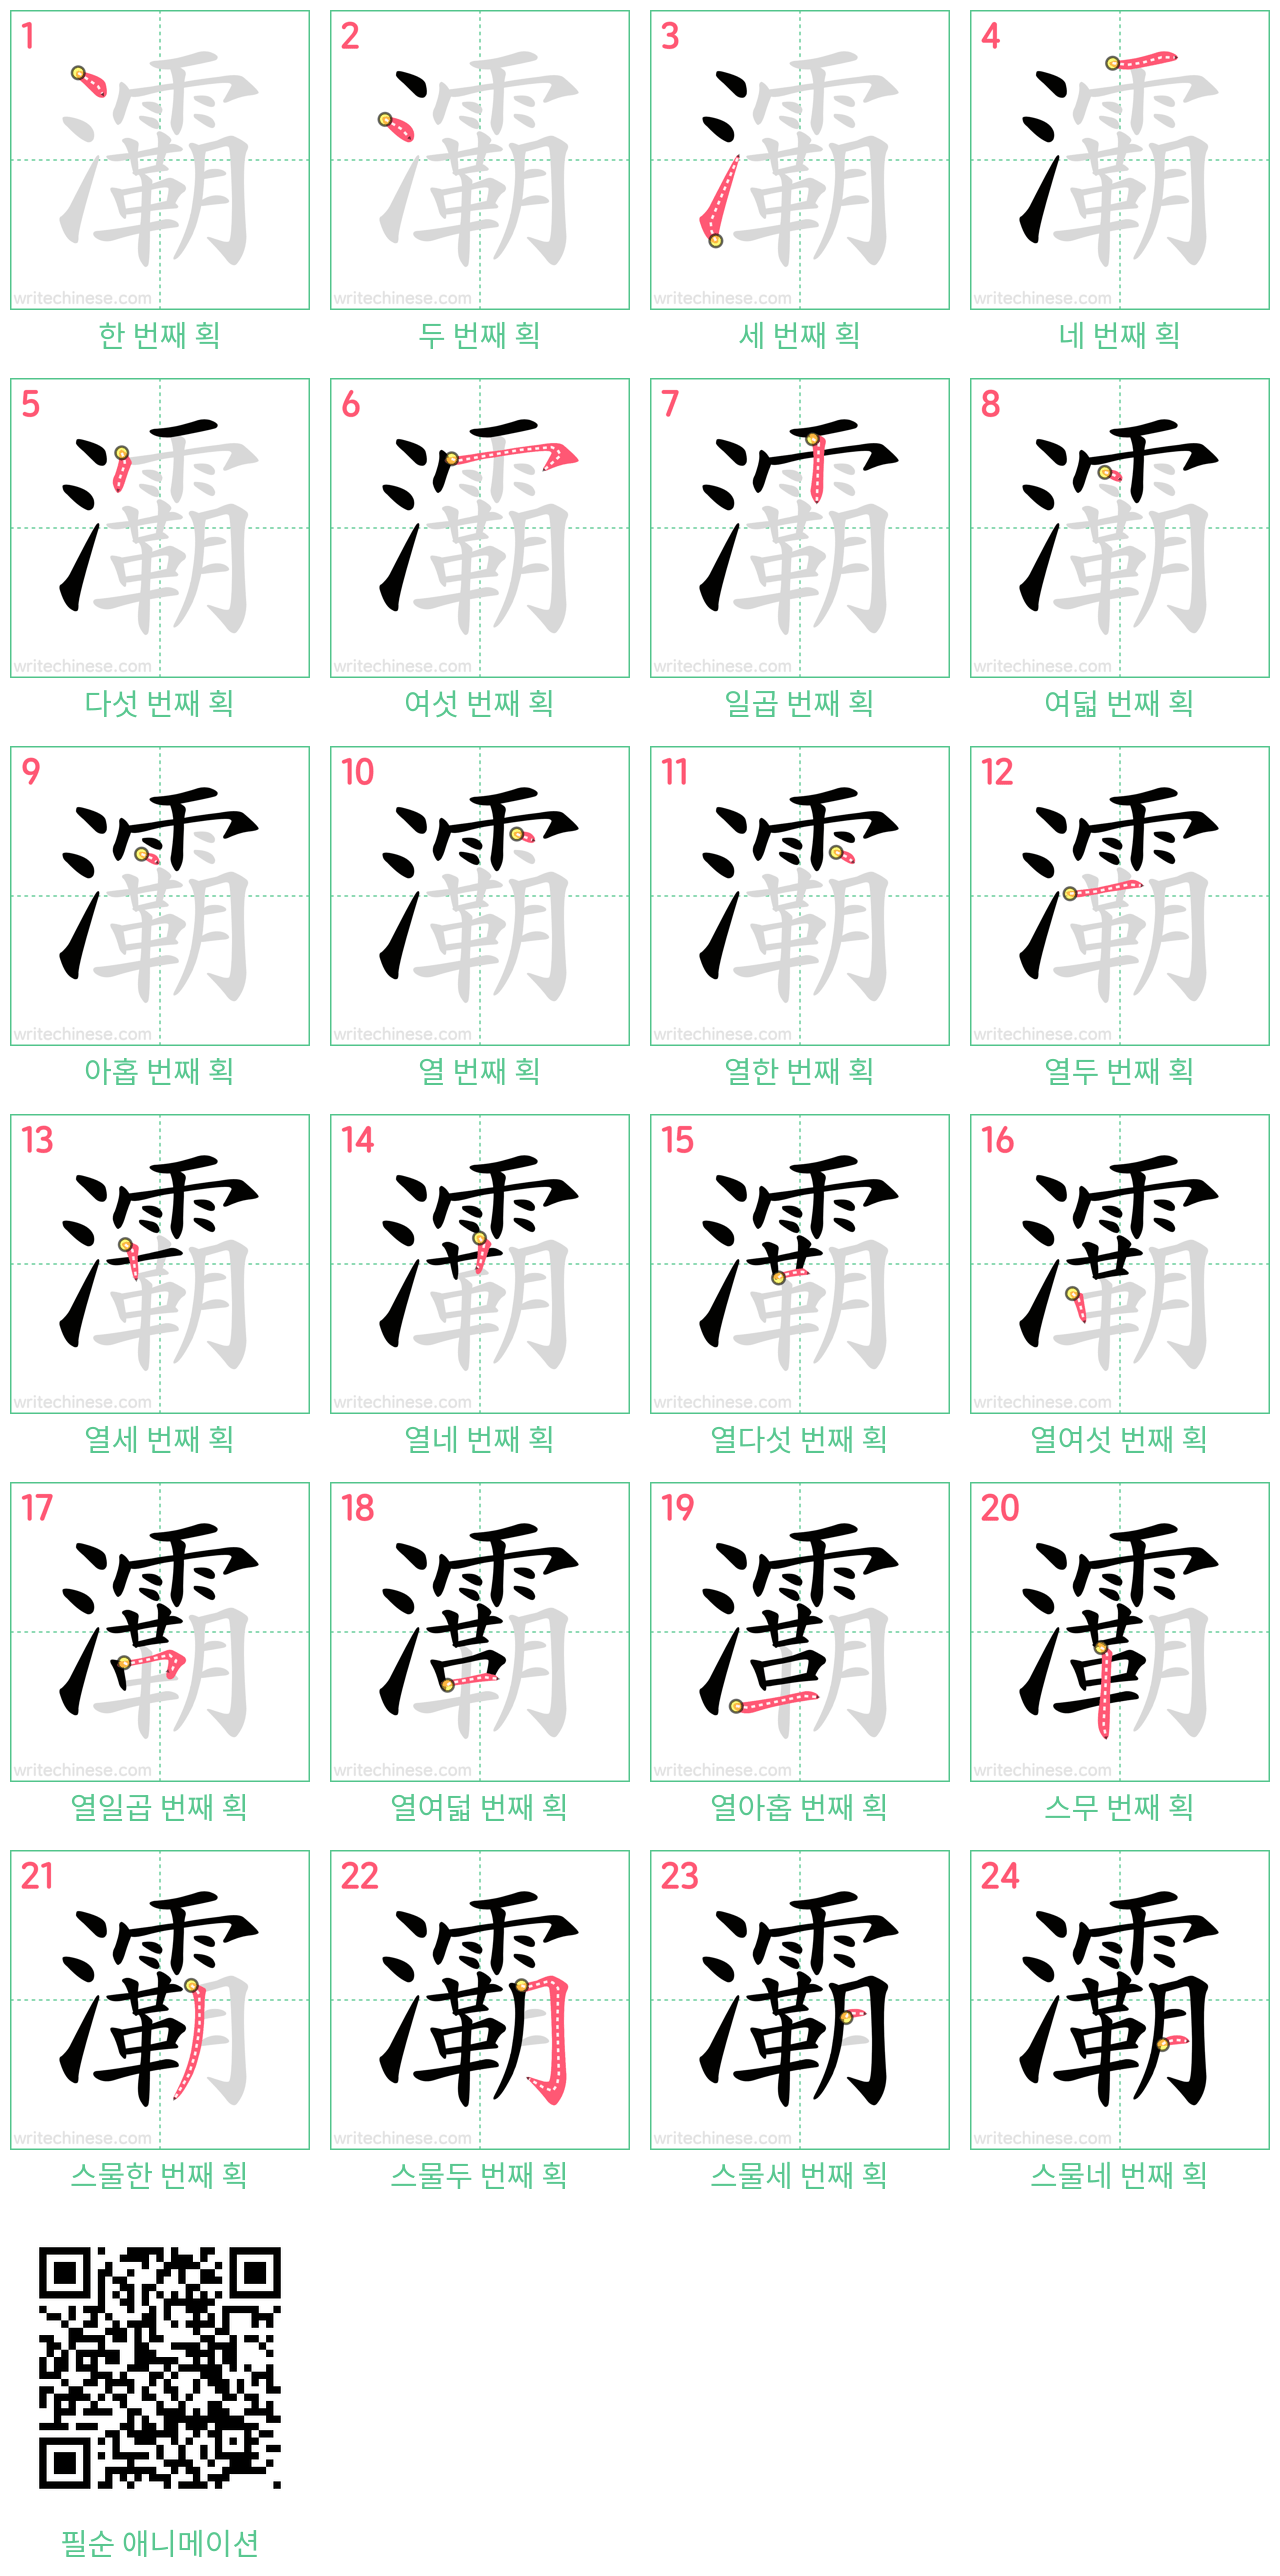 灞 step-by-step stroke order diagrams